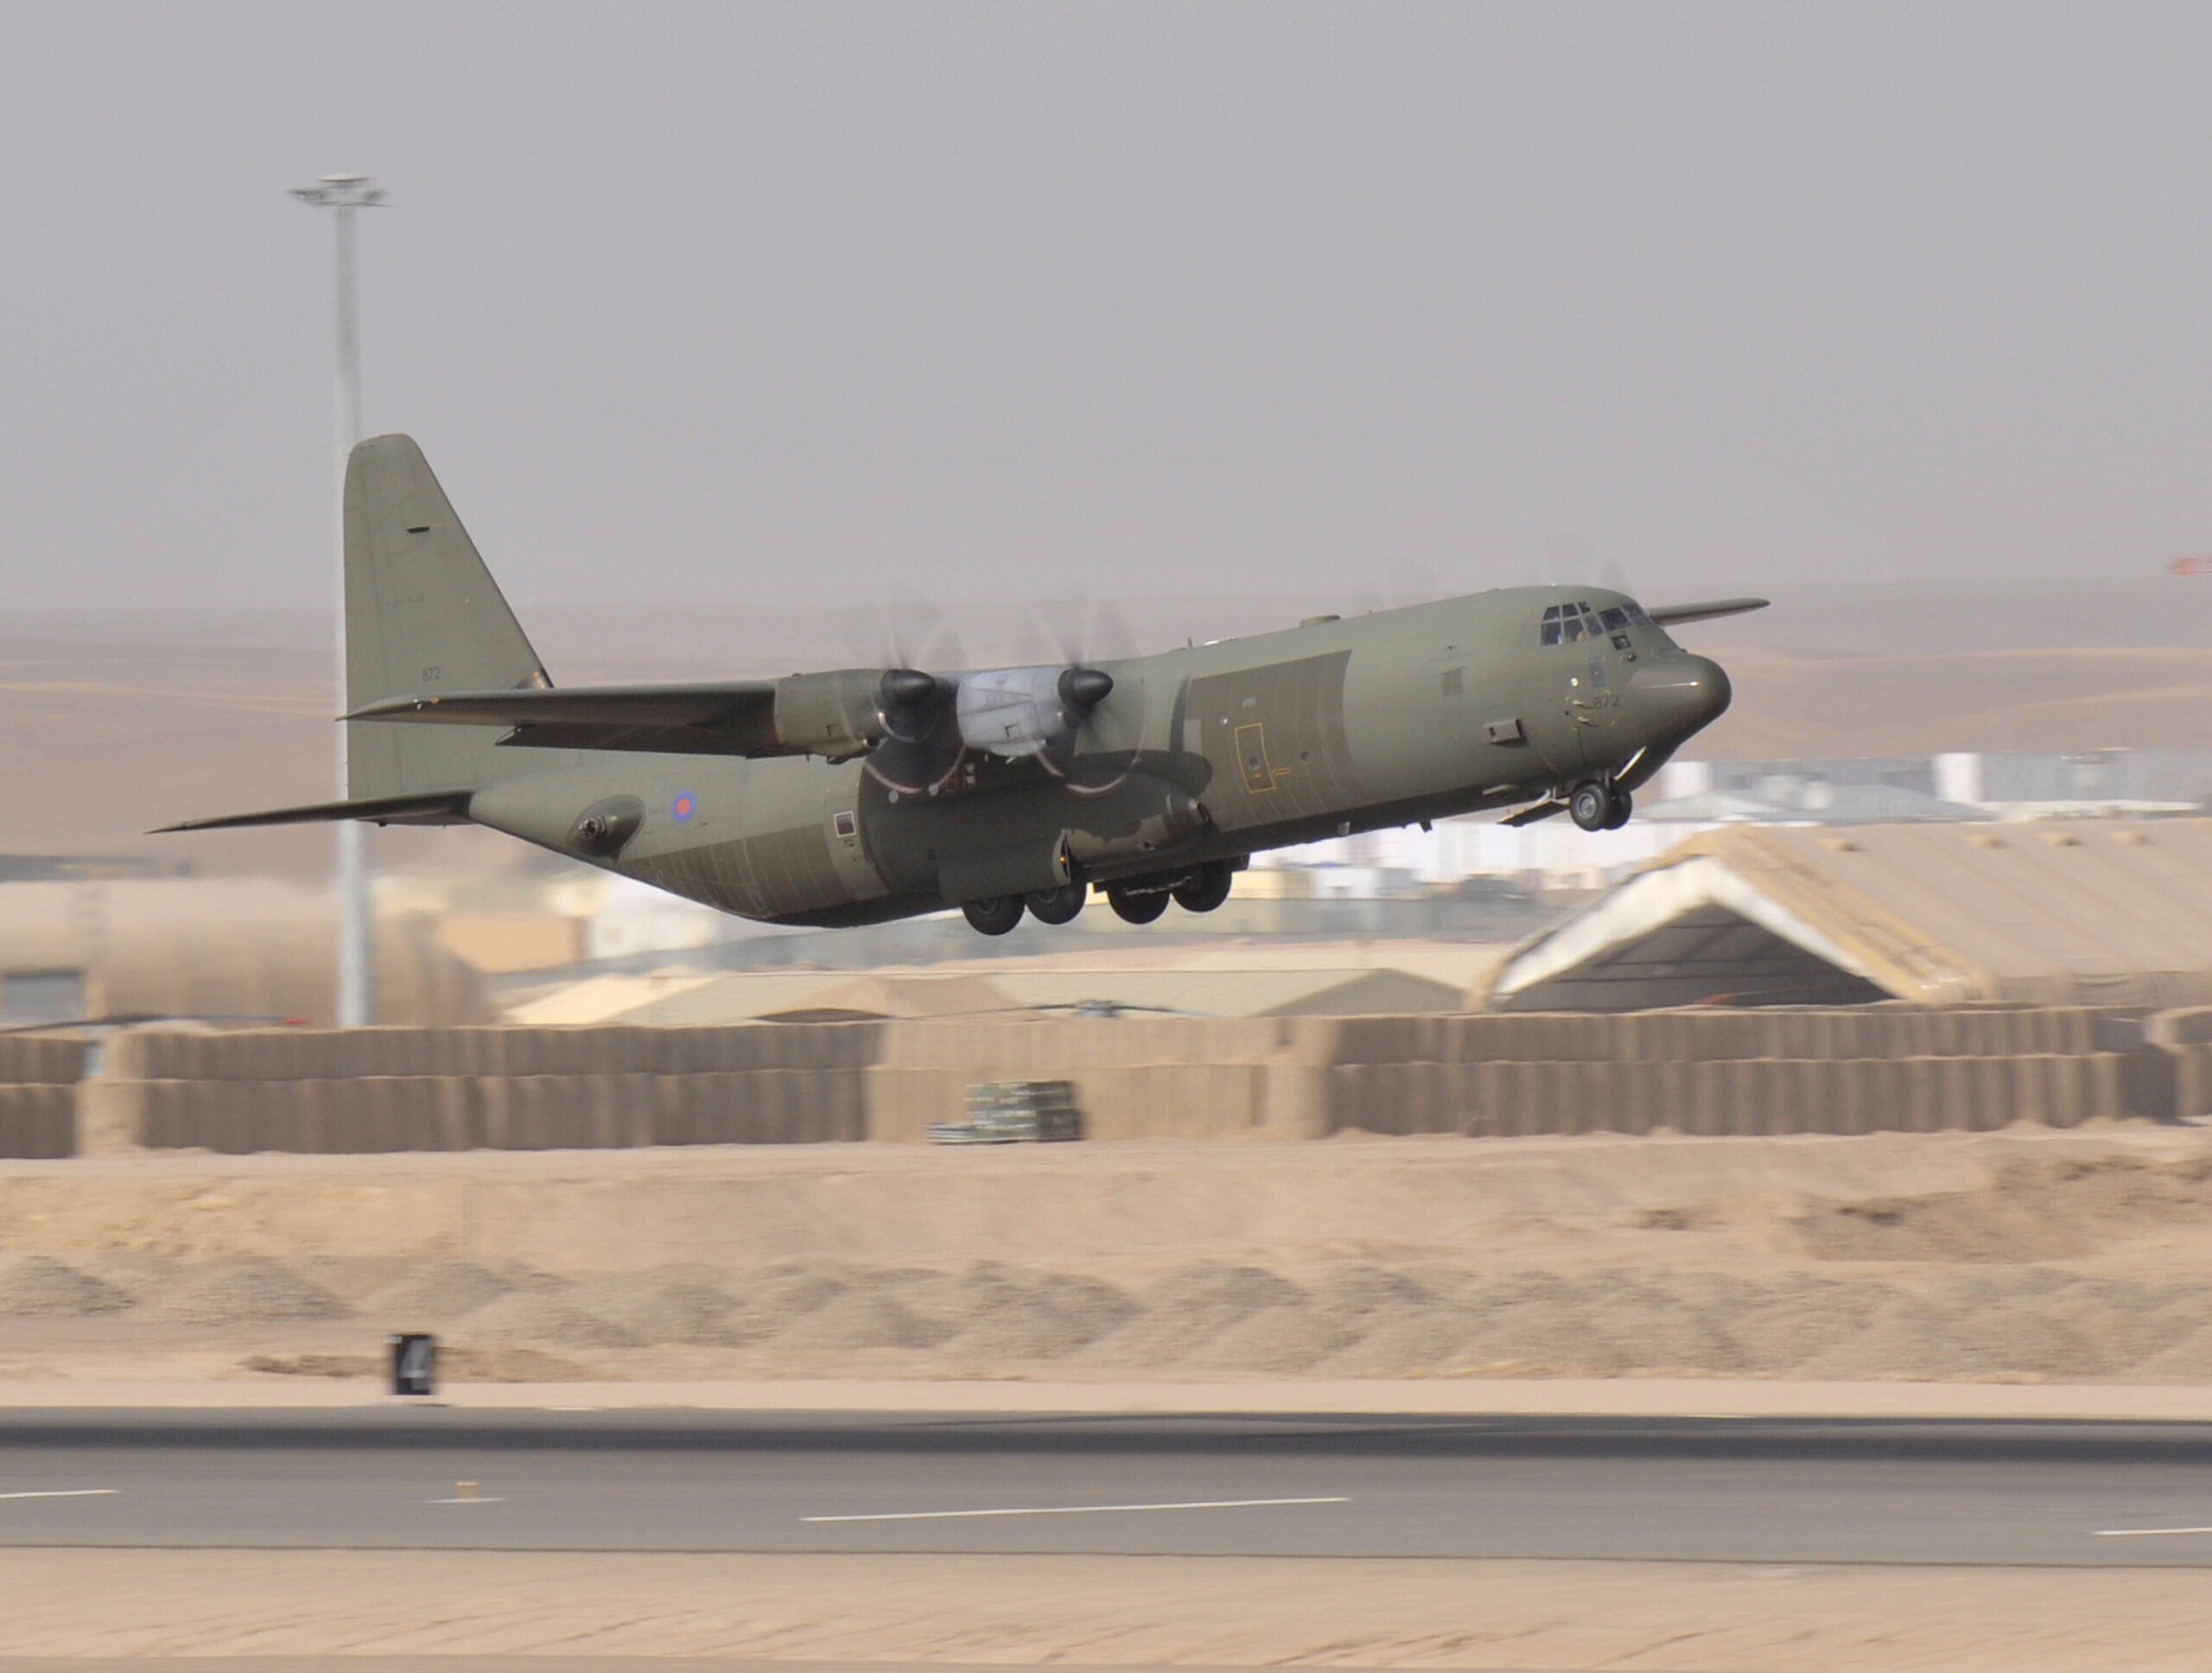 c-130 hercules in afghanistan